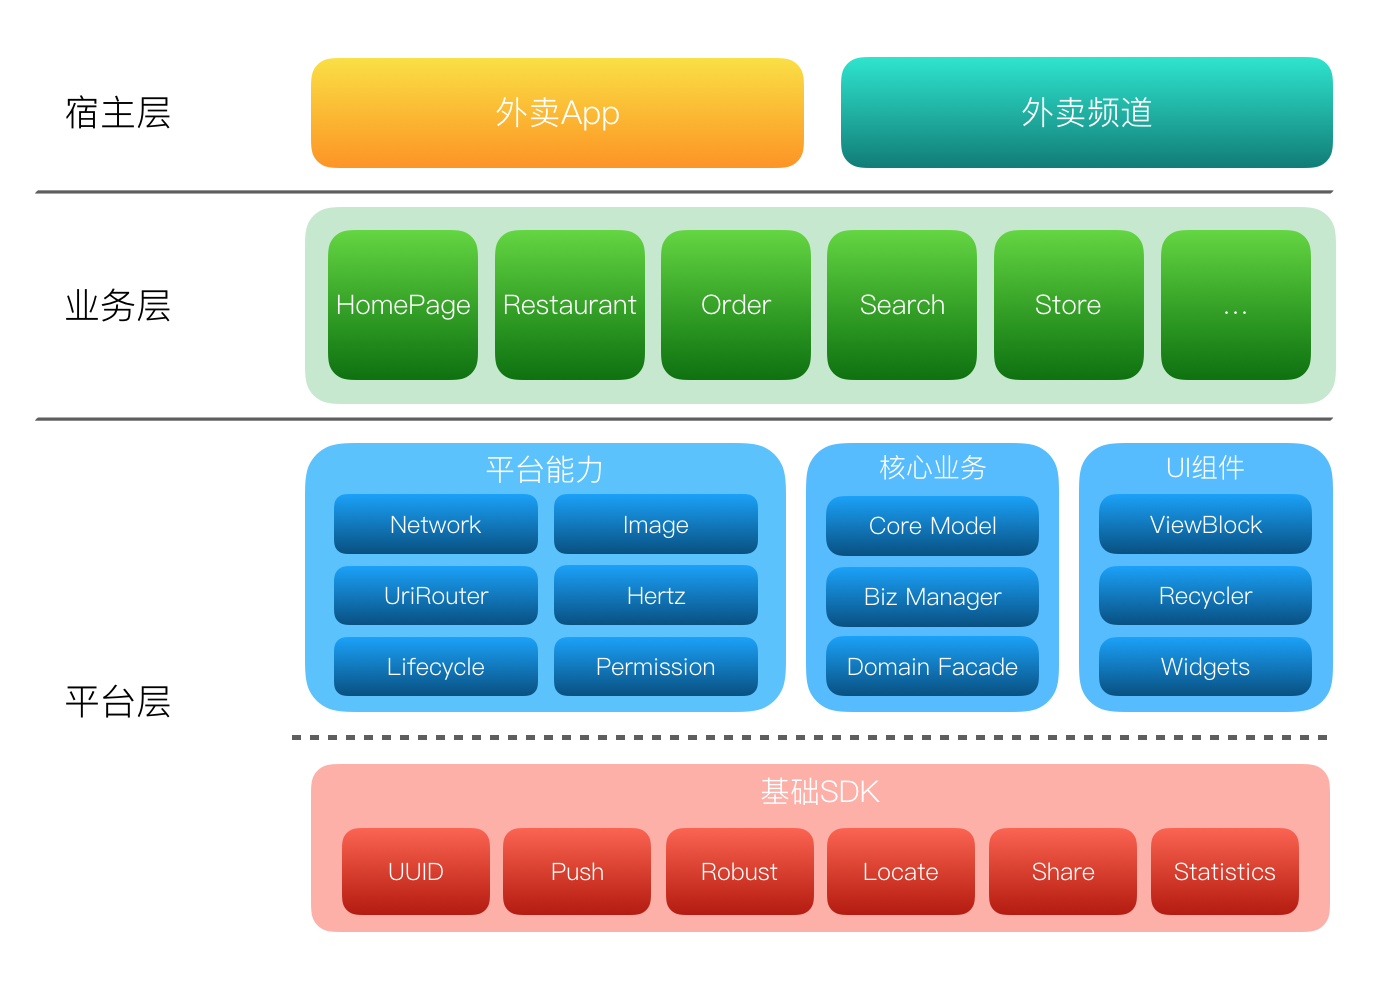 全流程重构京东服务市场系统-架构